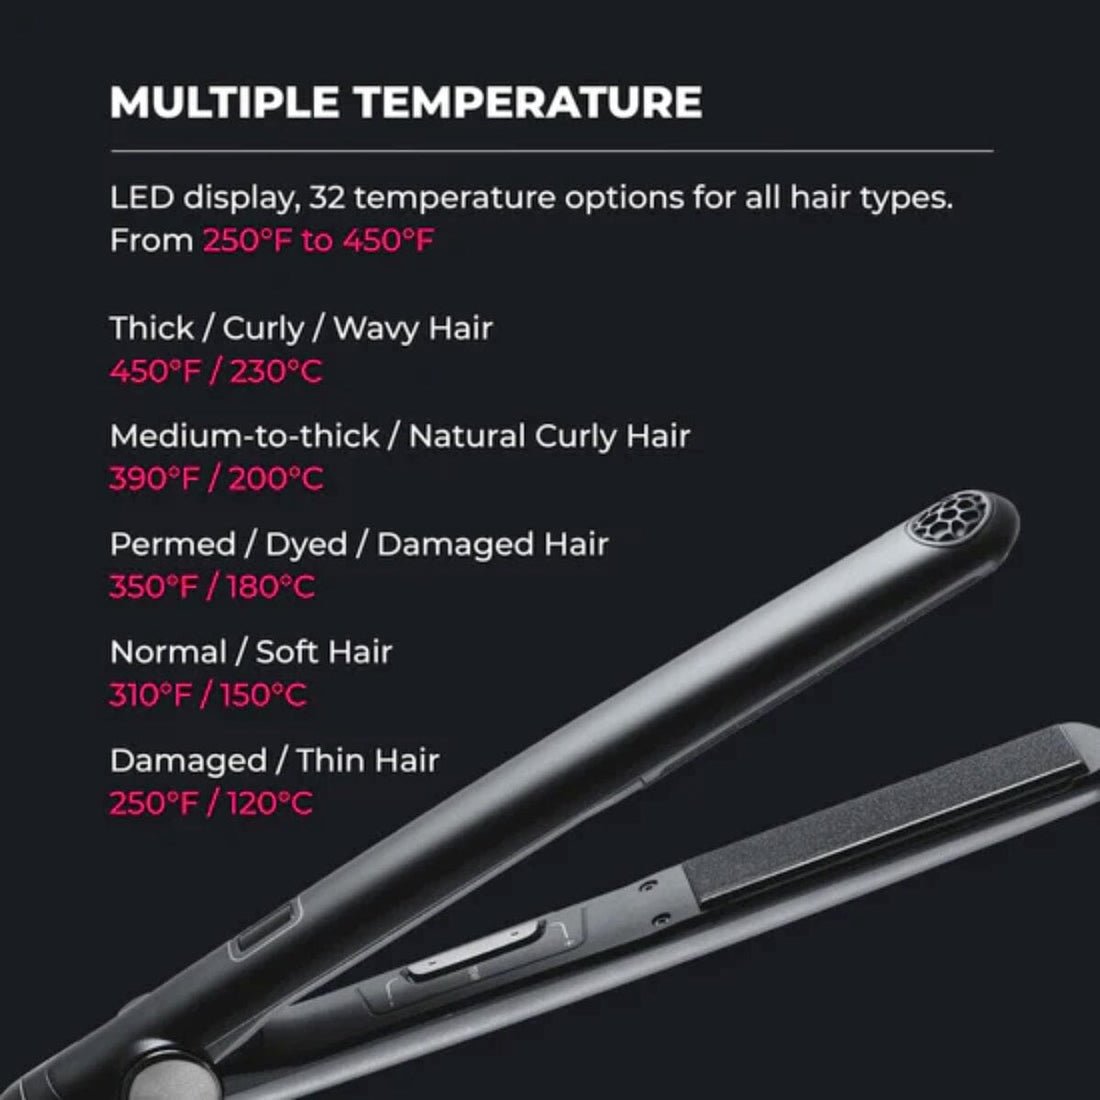 HairMNL TYMO Sway Straightening Iron Black HC-201B Features